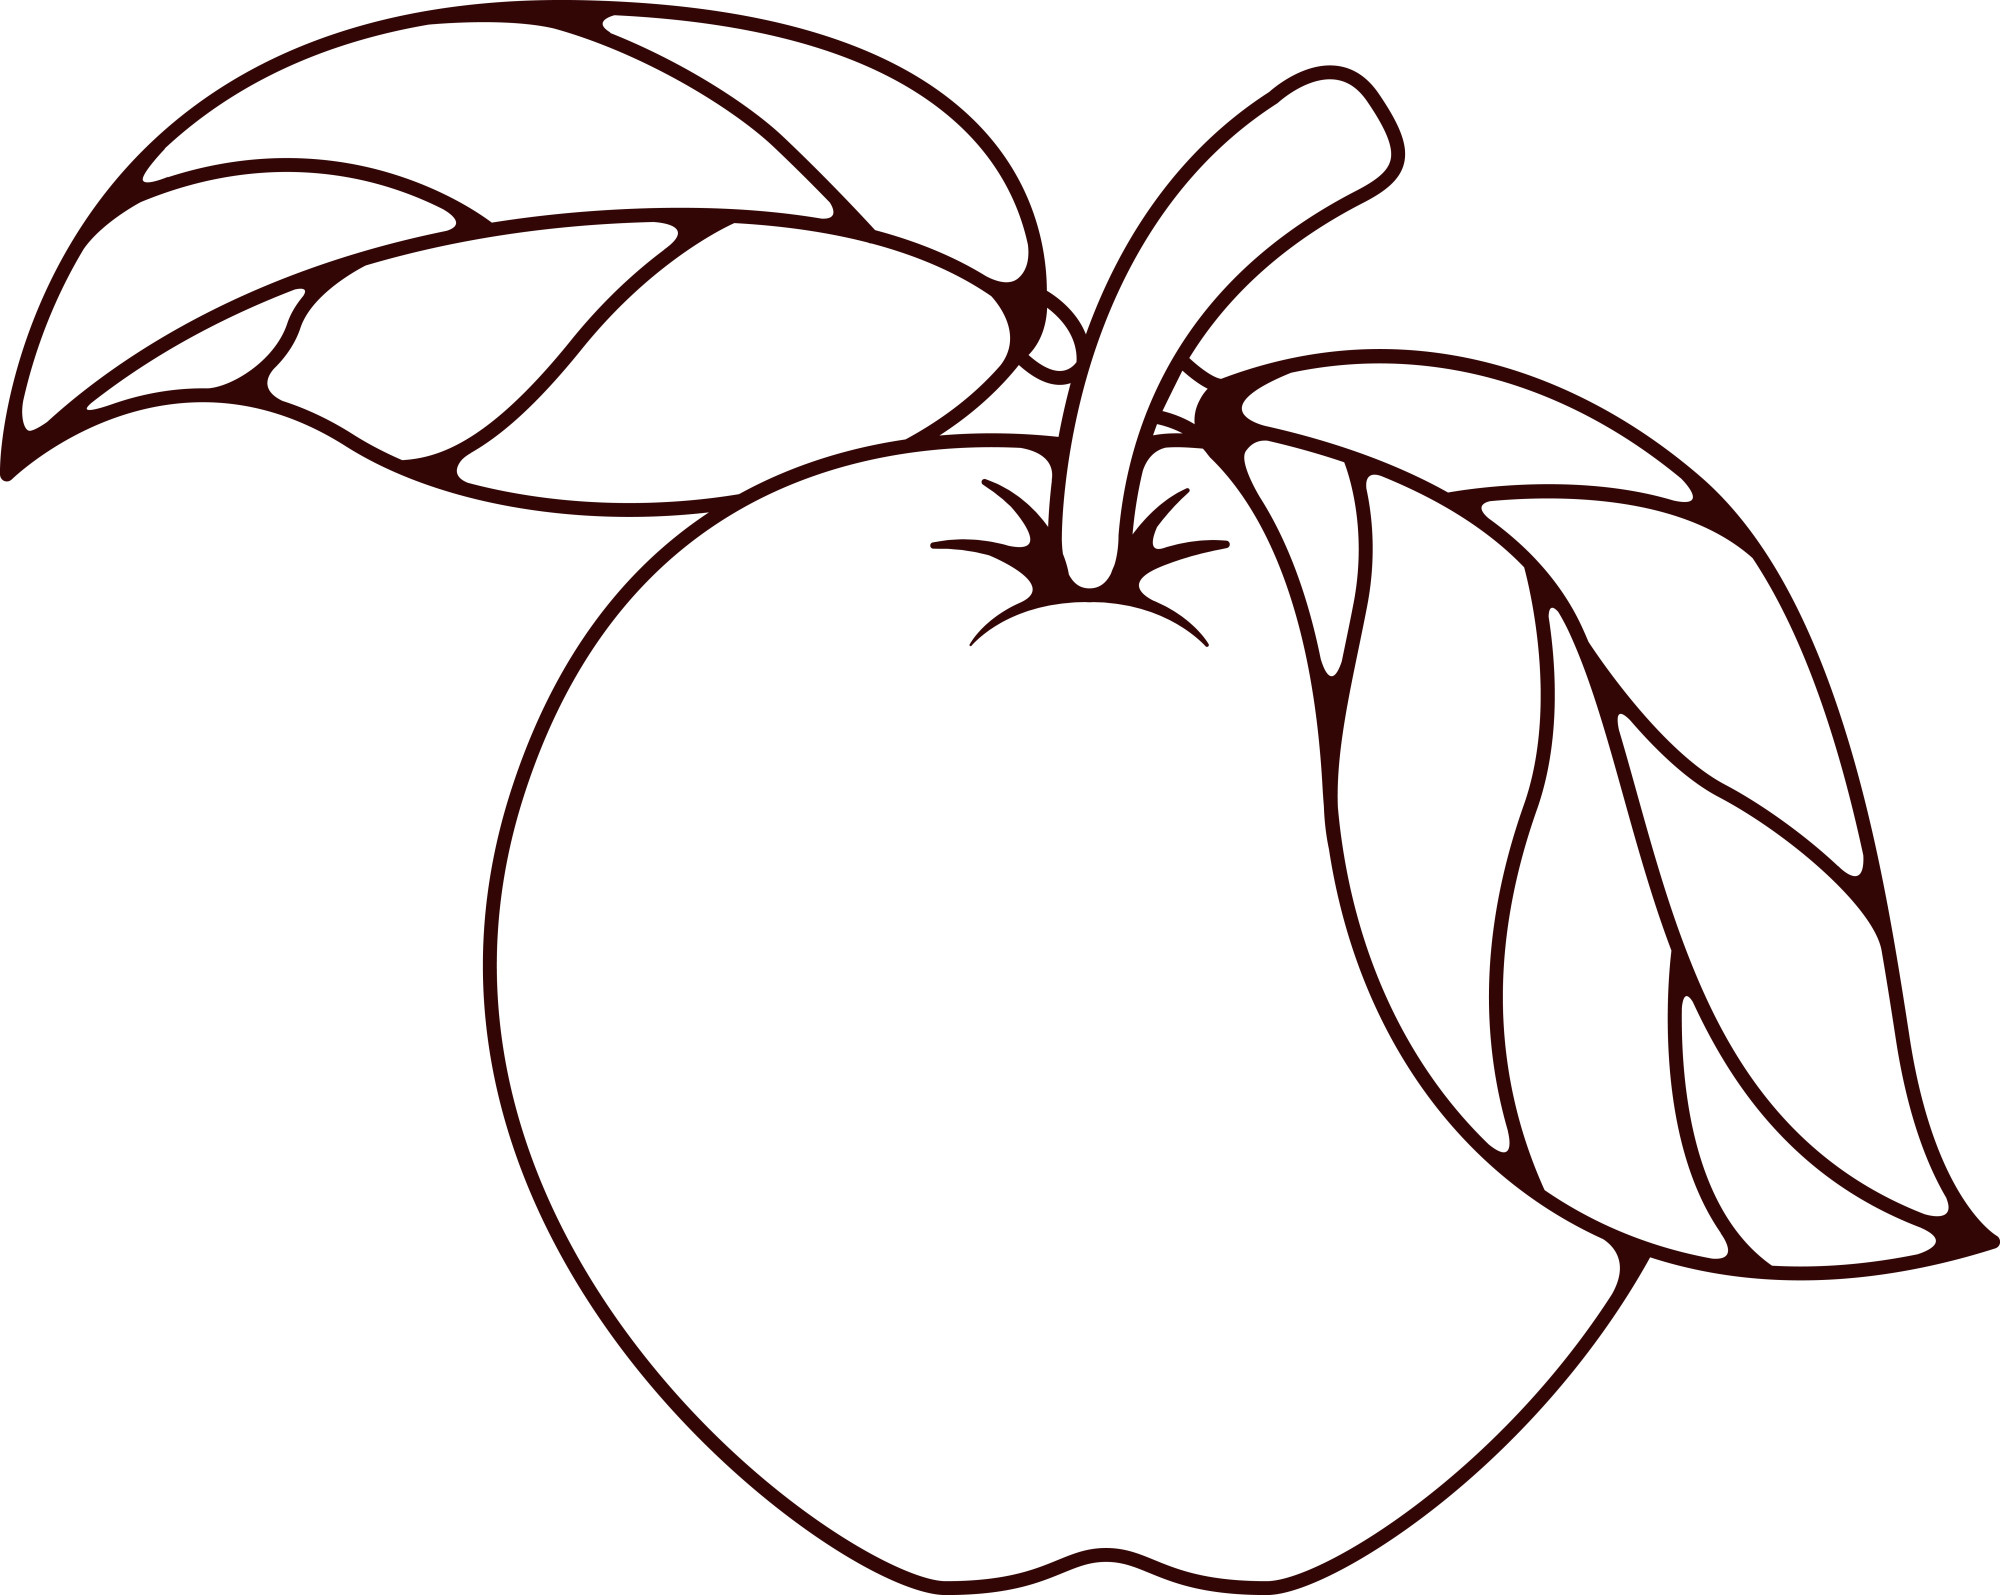 Раскраска для детей: красивое яблоко с большими листиками на ветке